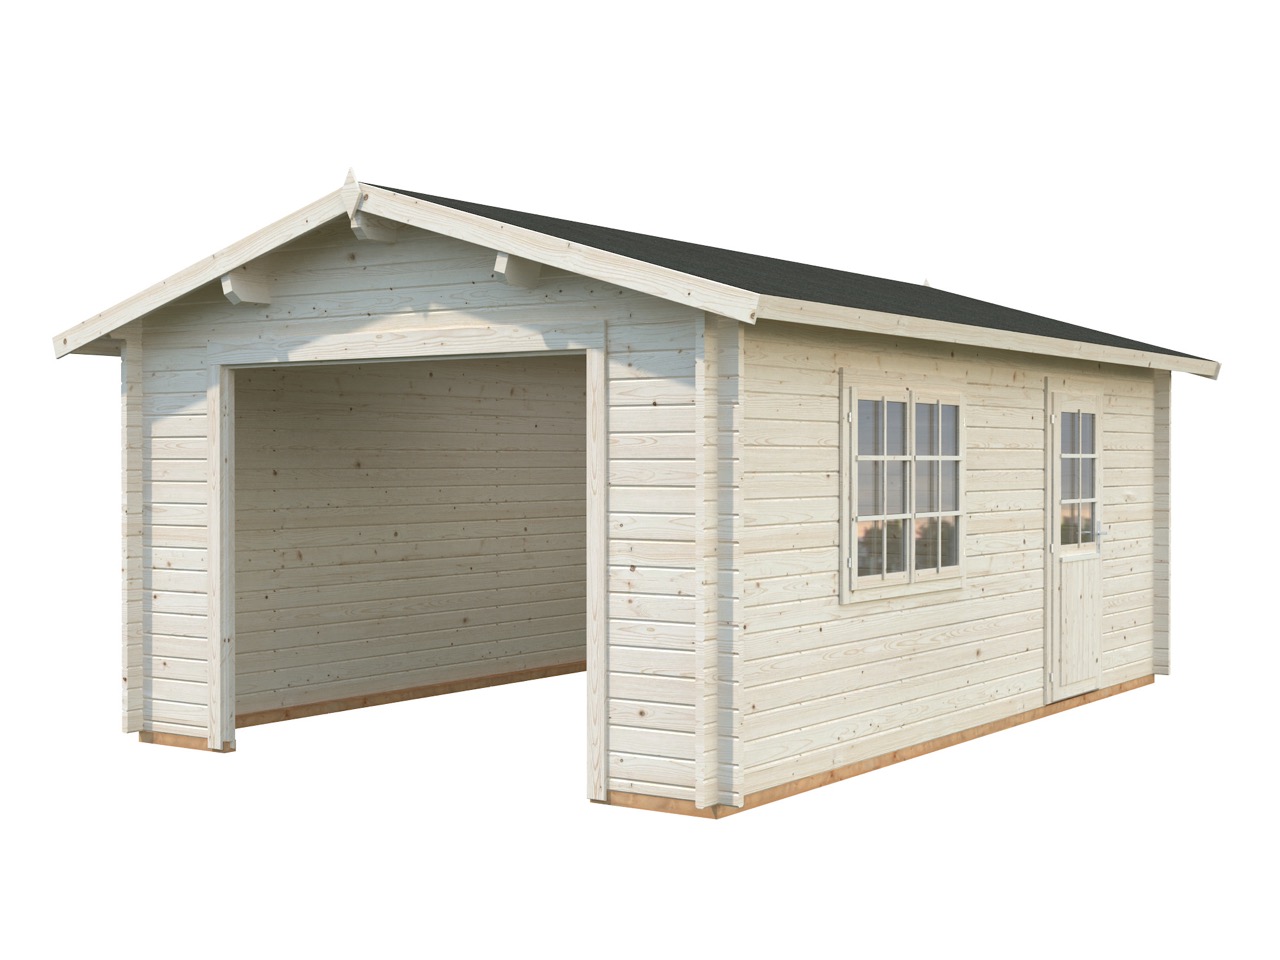 PALMAKO Holz-Garage Roger von kaufen günstig | Garagen Holz 380x570cm aus m² ohne im Tor 44mm Shop 19,0